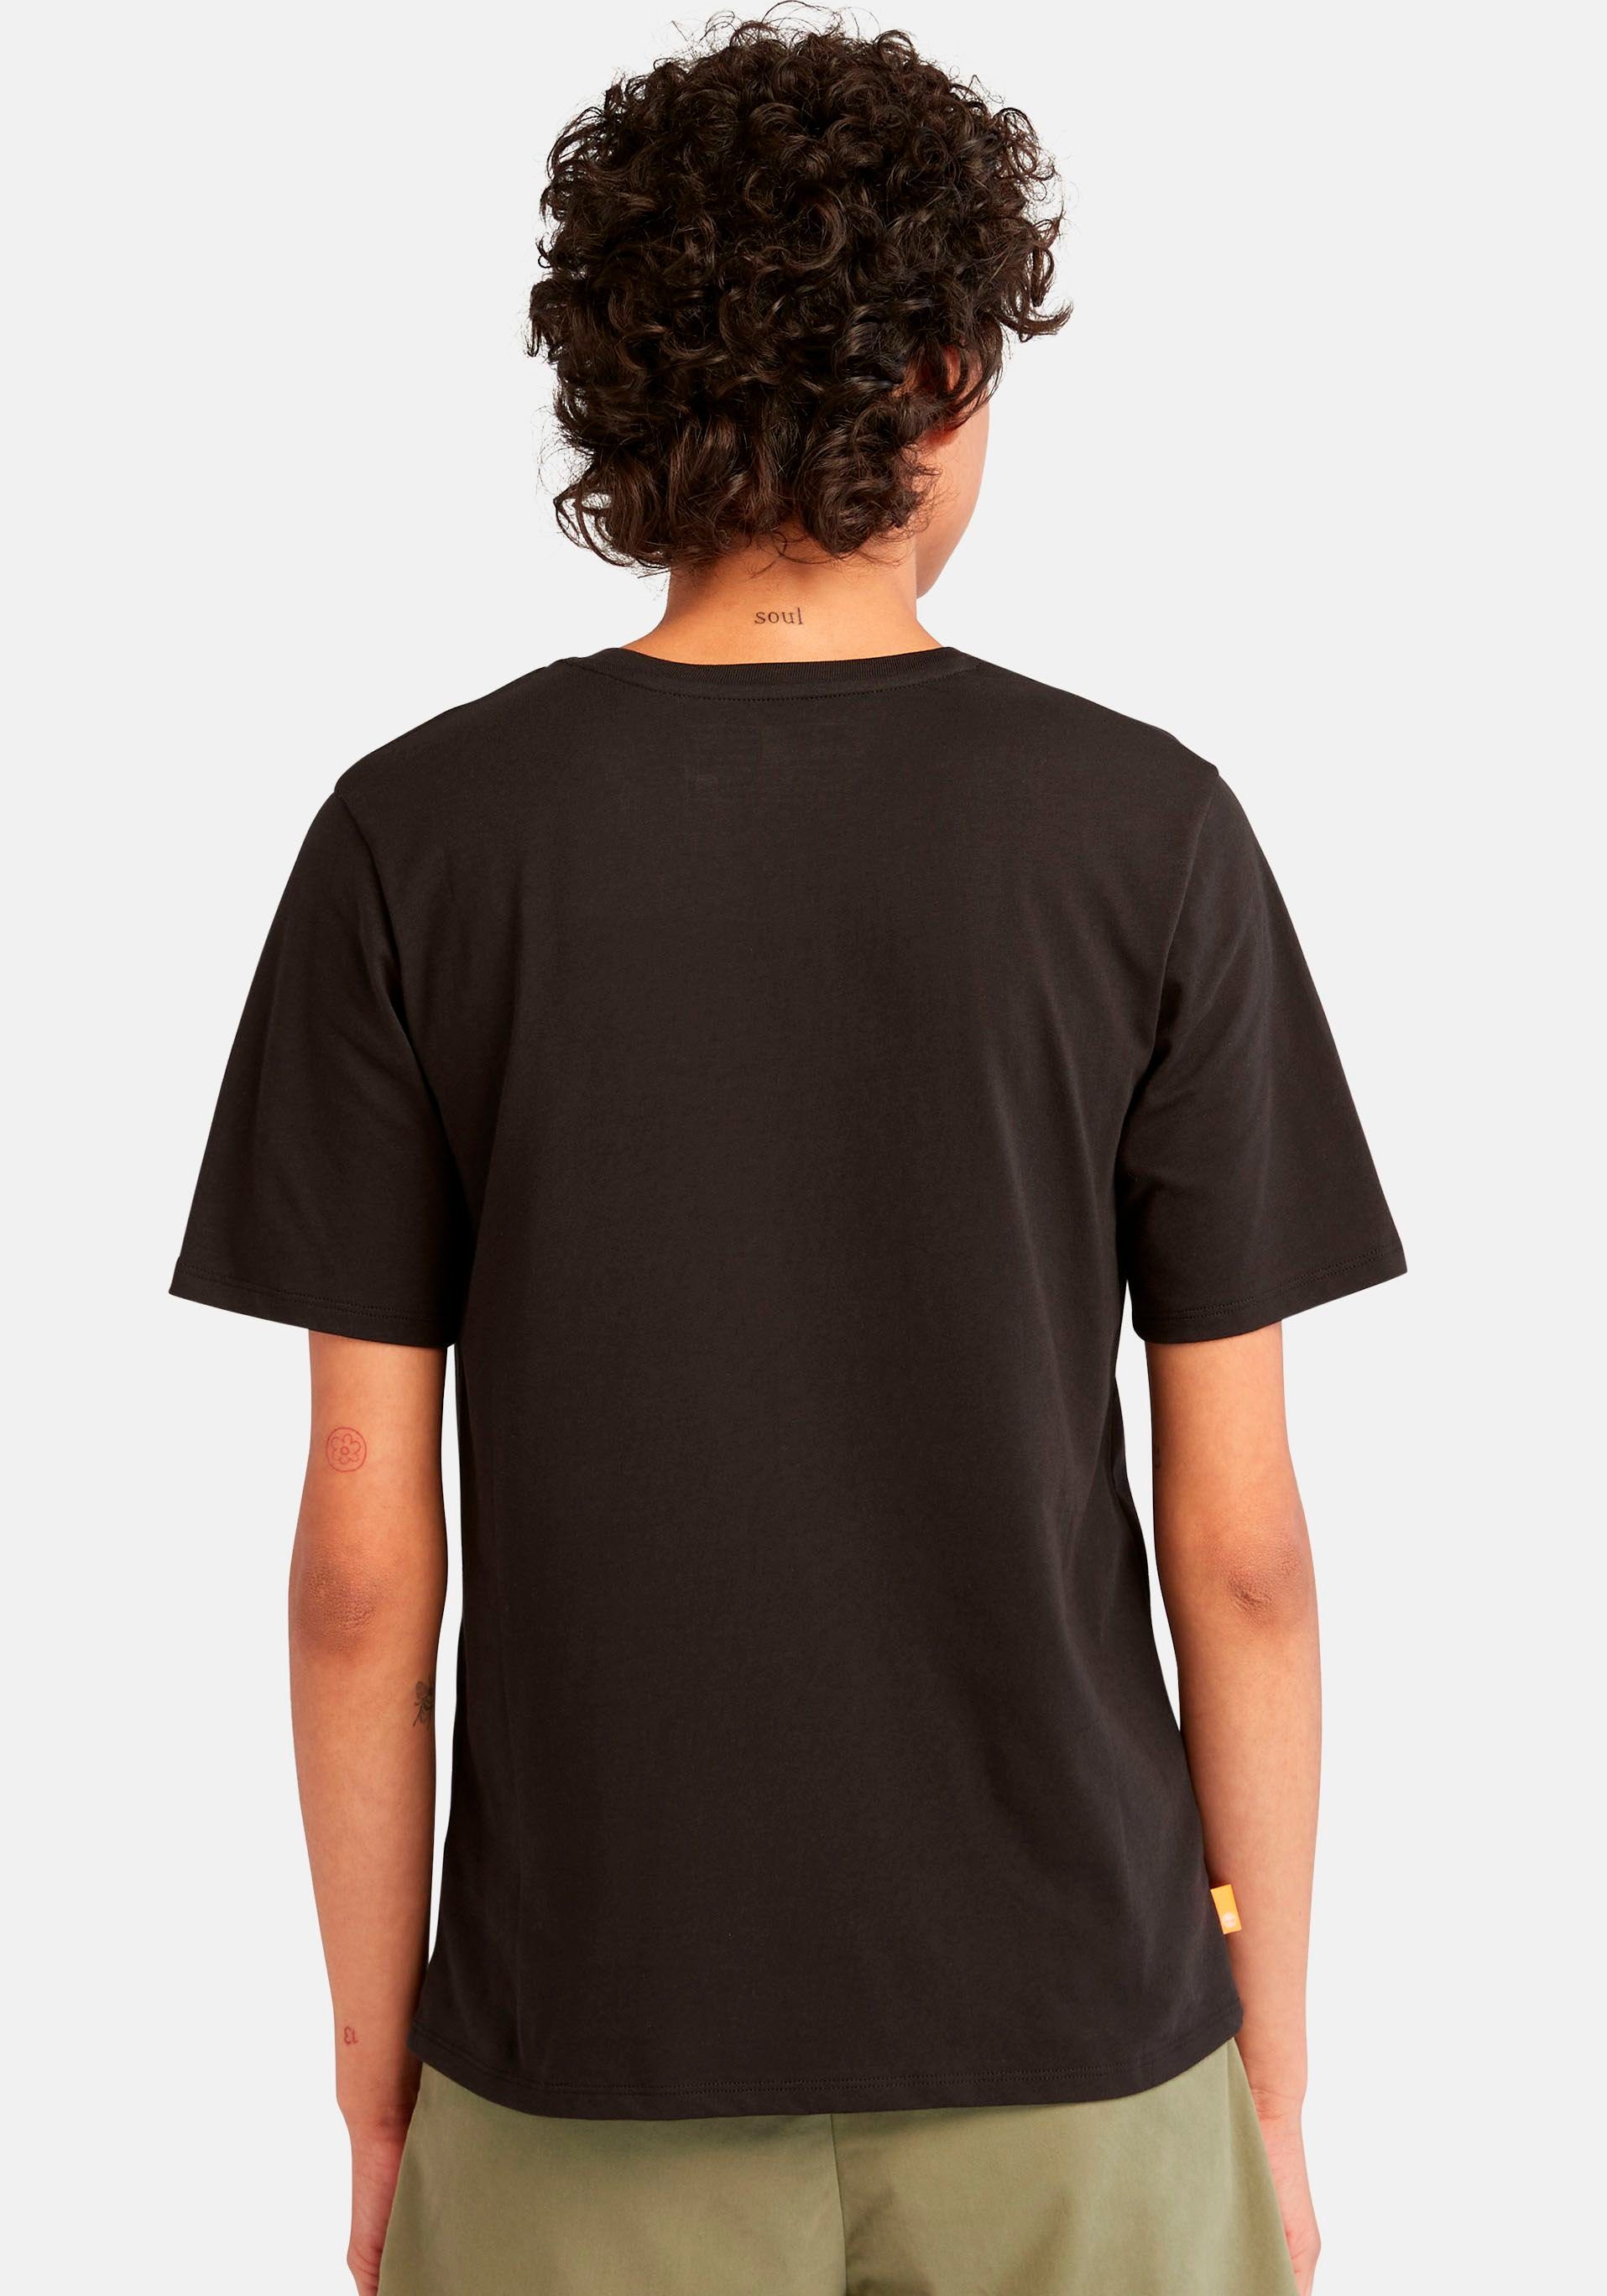 LOGO Logodruck Timberland REGULAR mit schwarz STACK T-Shirt TEE